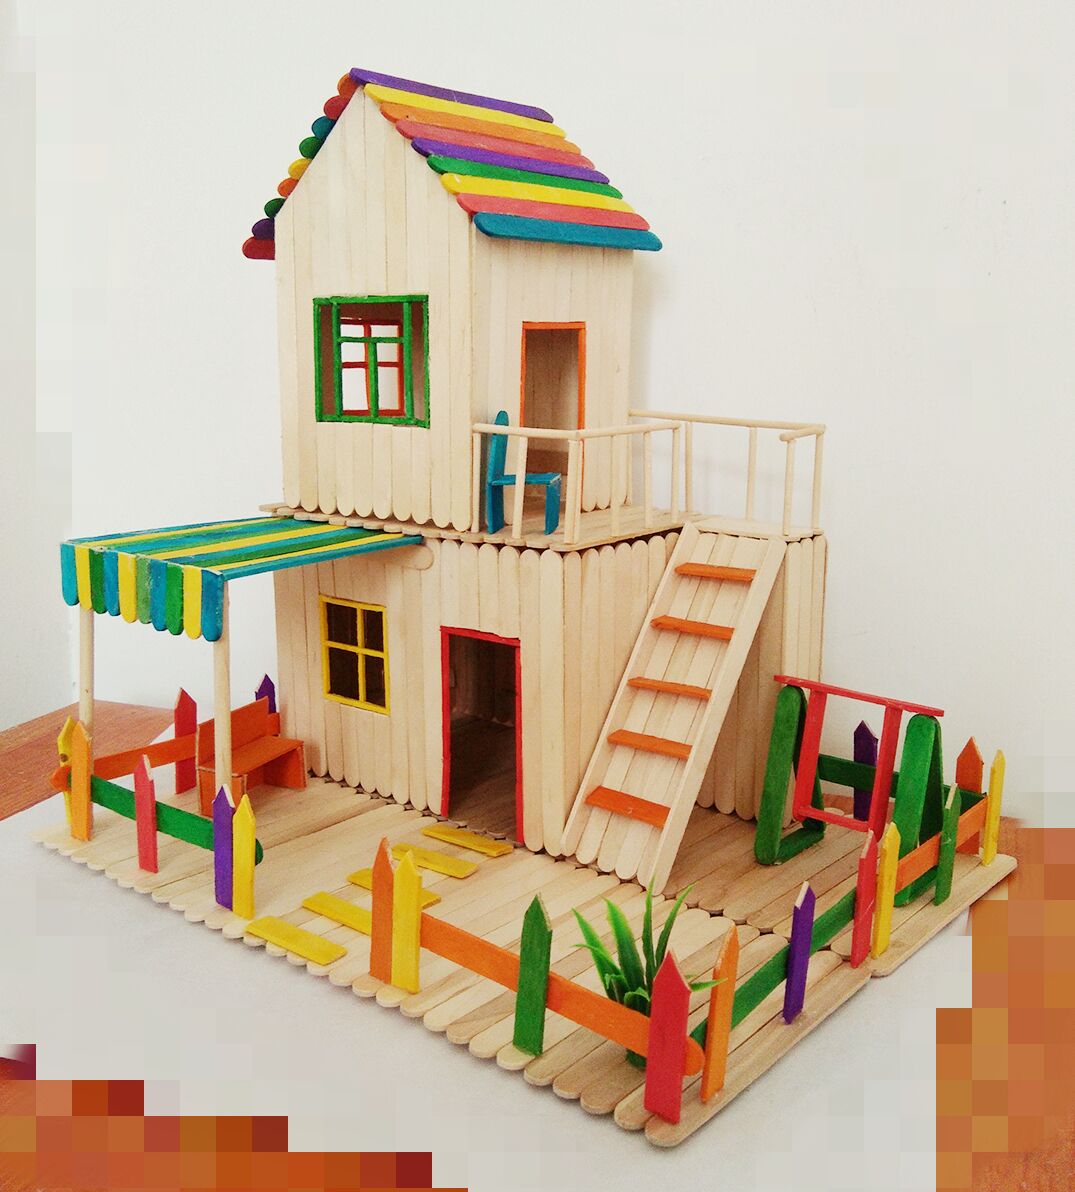 雪糕棒冰棒棍手工diy房子小木屋制作模型材料木条木棒木棍